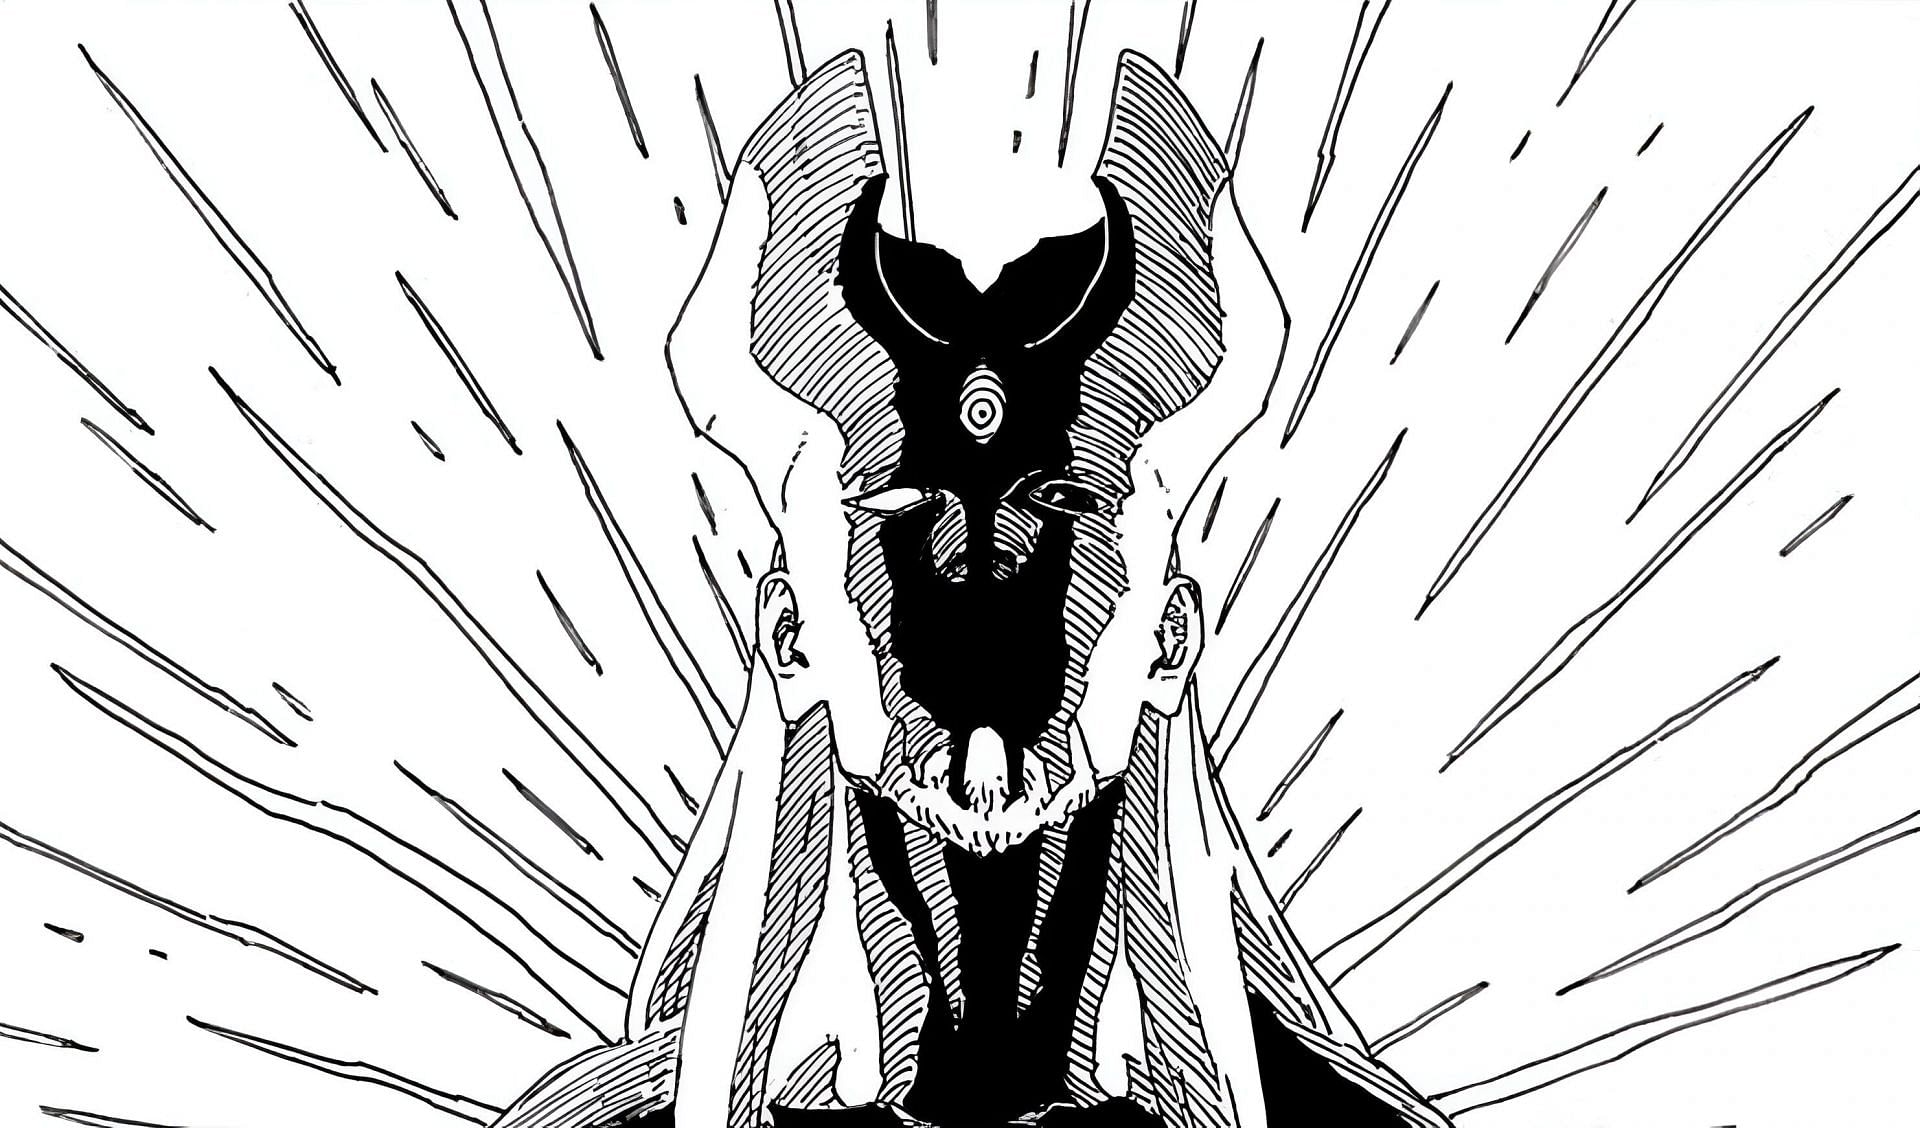 Shibai as seen in the manga (Image via Shueisha)